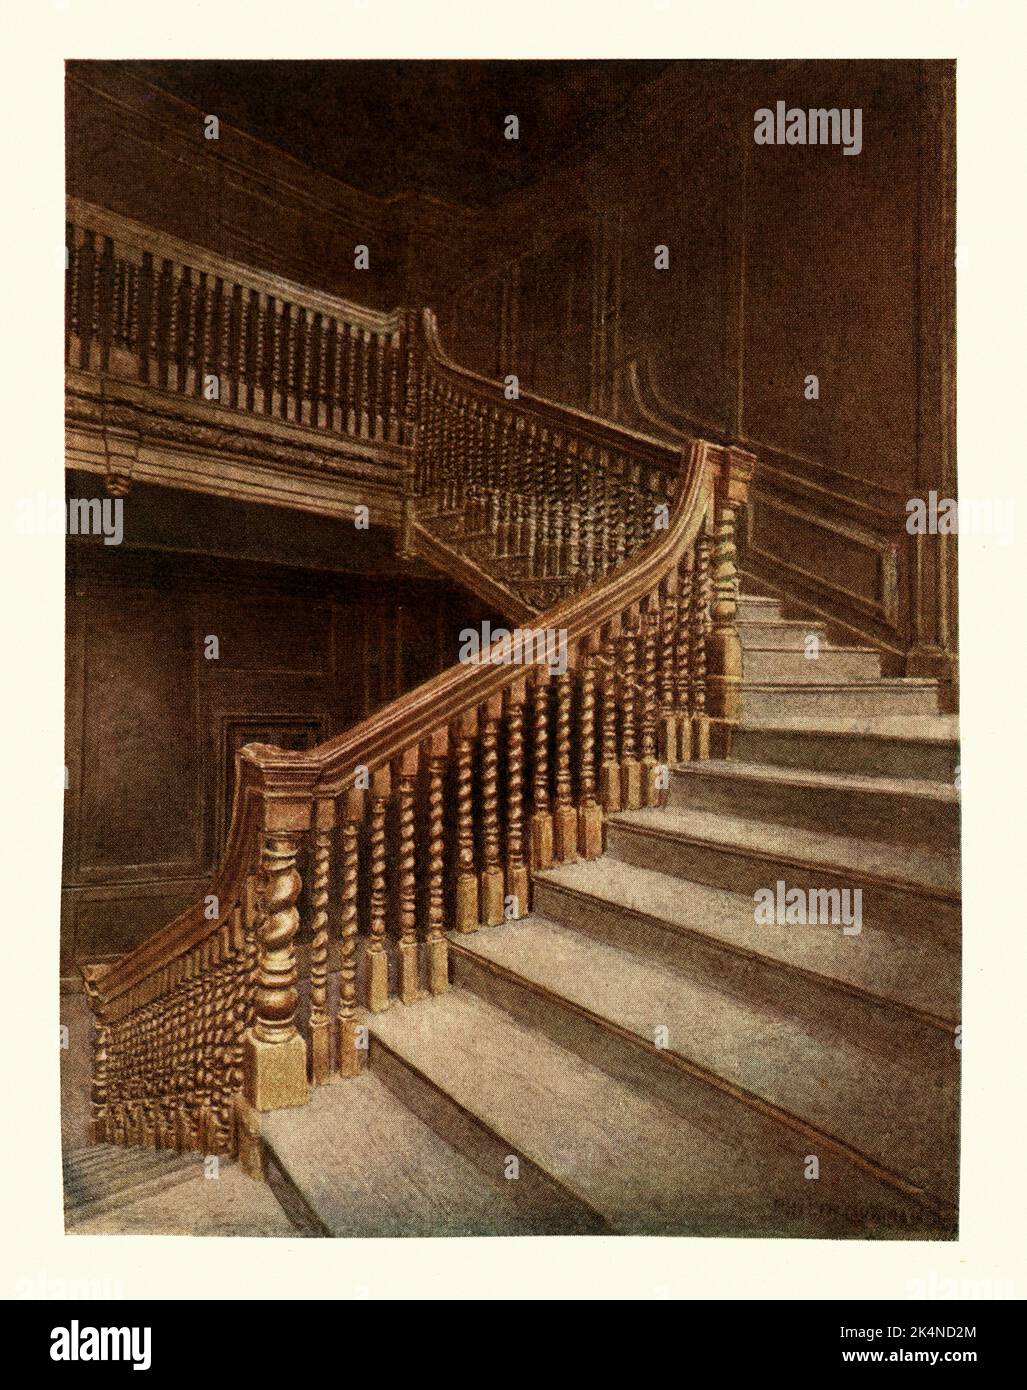 Architecture, escalier d'époque de la reine Anne, no 10 Austin Friars, Londres, 1895 Banque D'Images